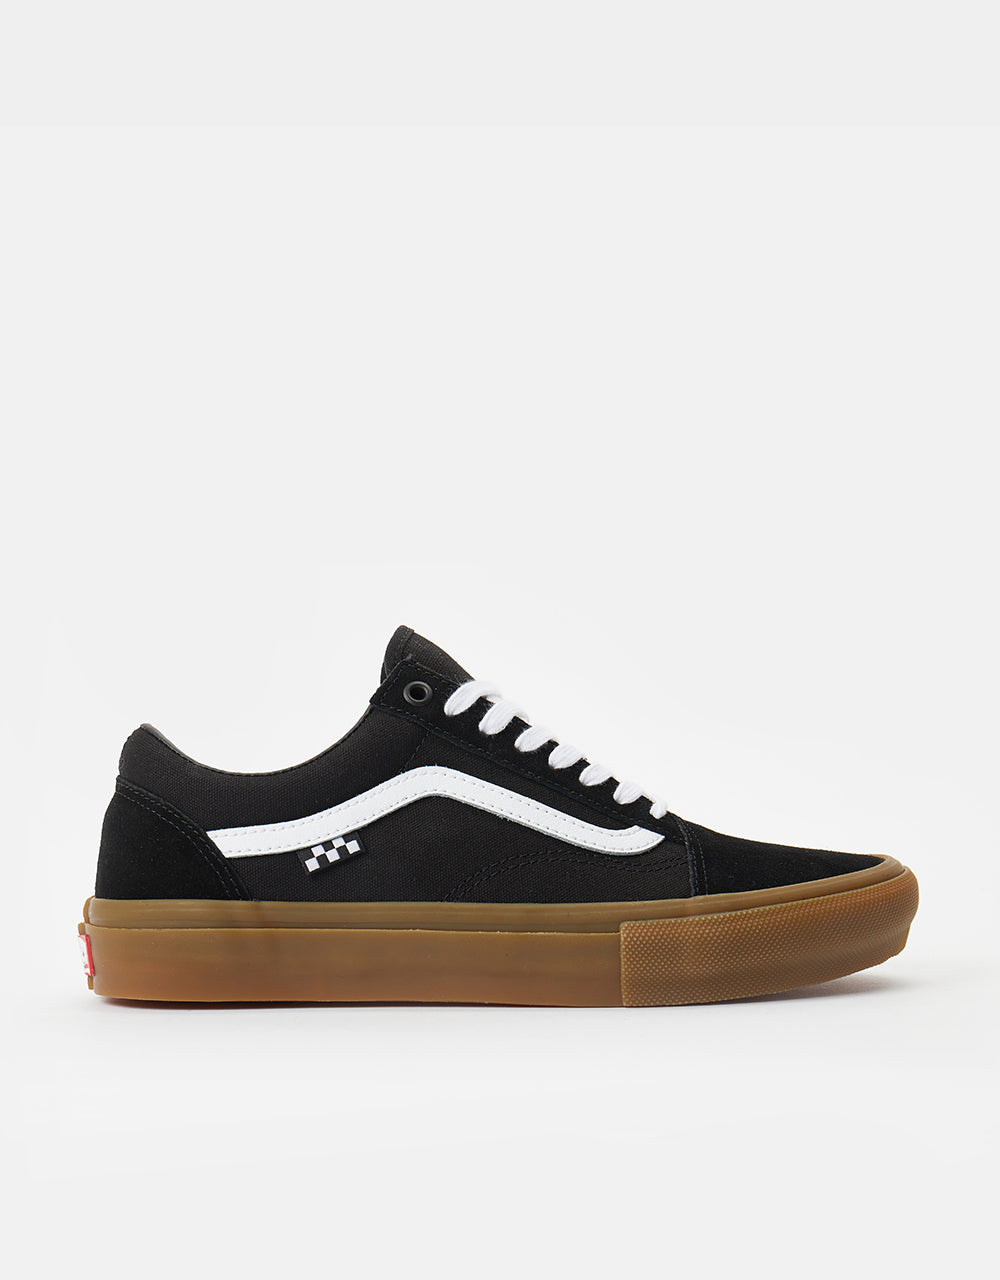 Vans Skate Old Skool Shoes - Black/Gum – Route One